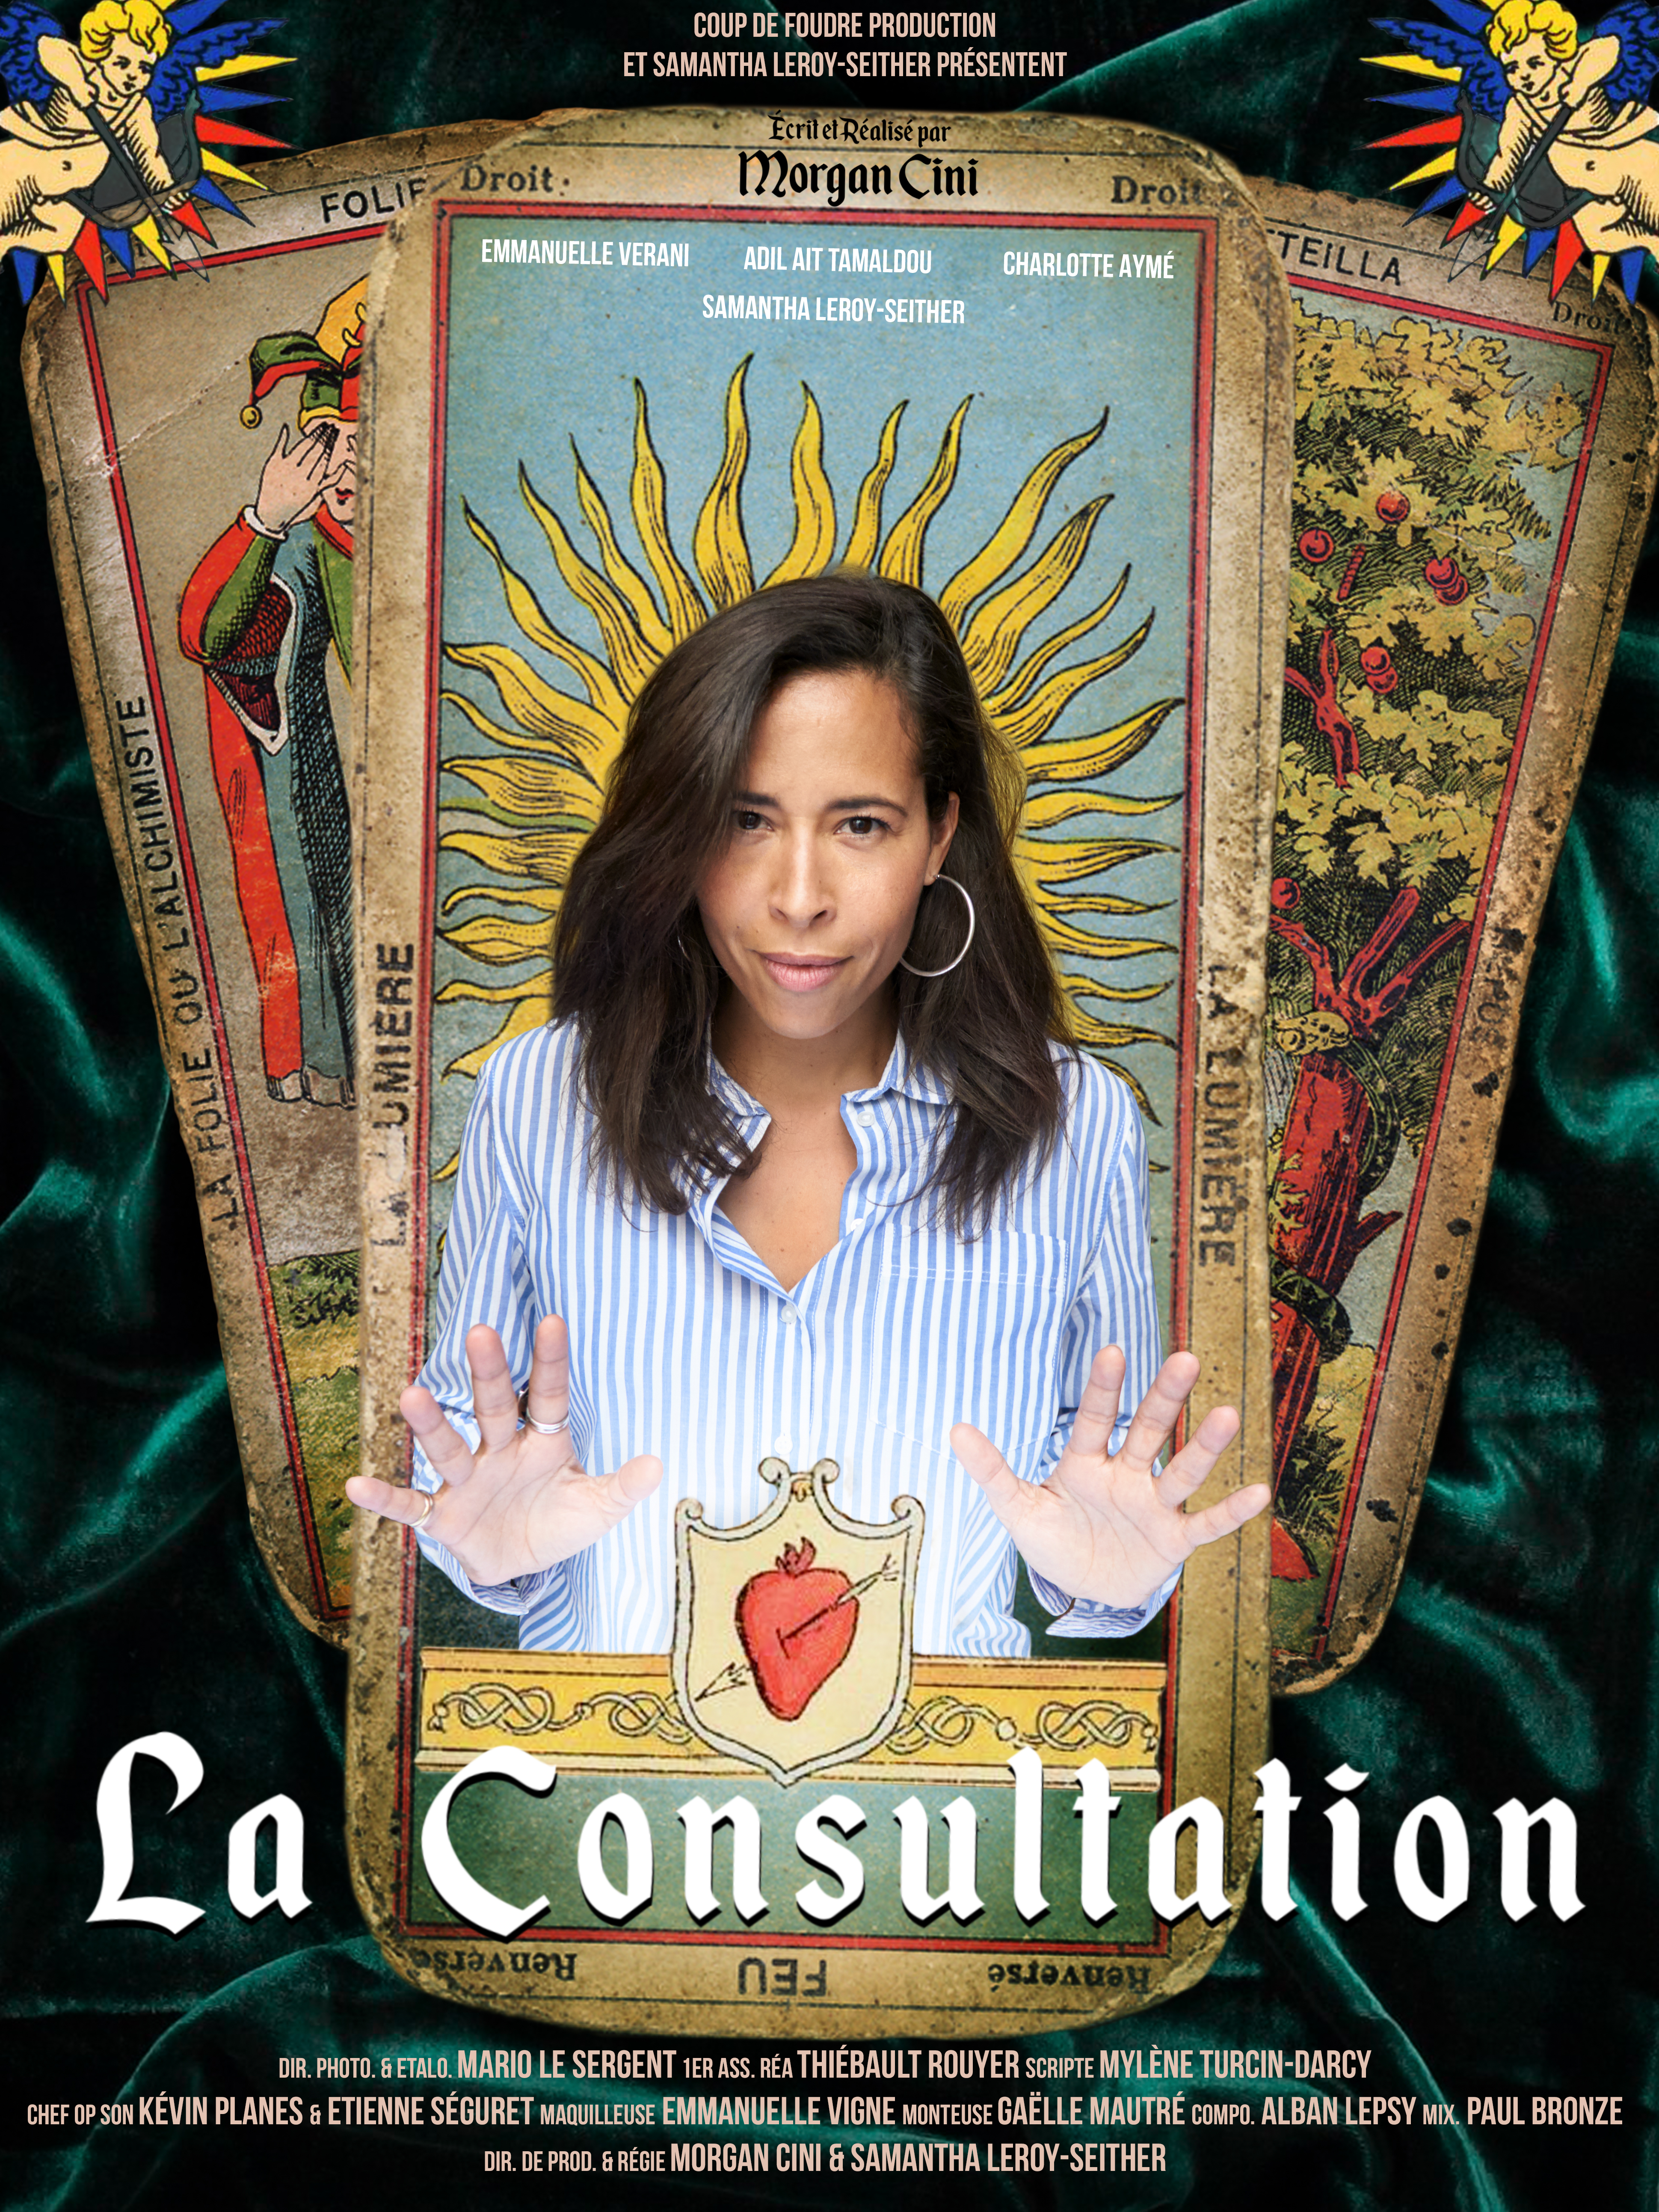 La Consultation ( The Consultation )